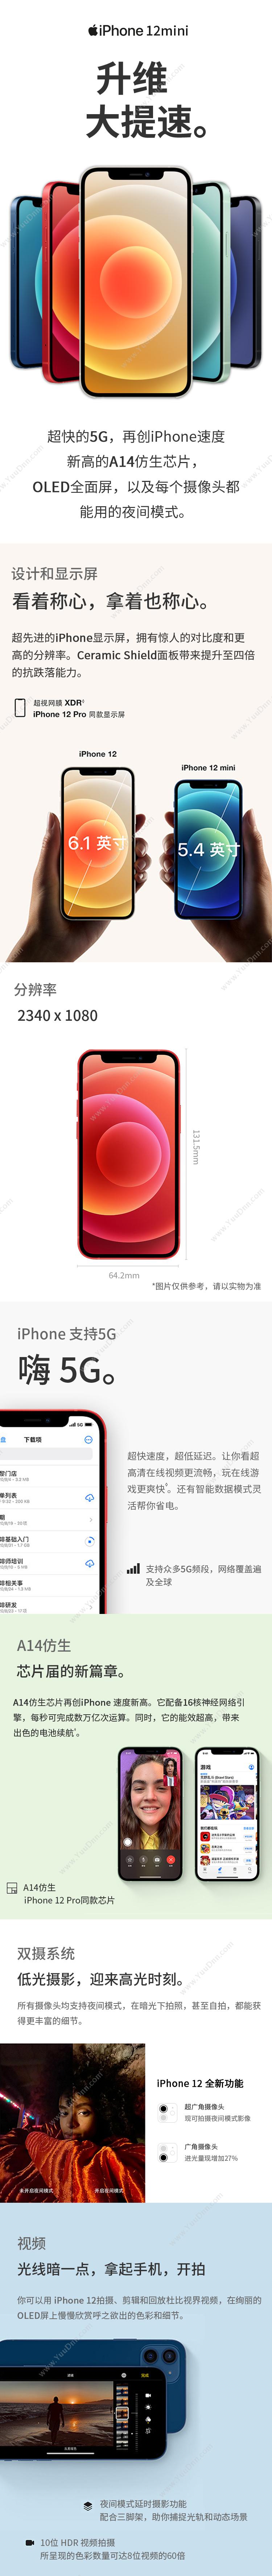 苹果 Apple iPhone 12Mini (MG803CH/A) 64G 白色 移动联通电信5G手机 手机